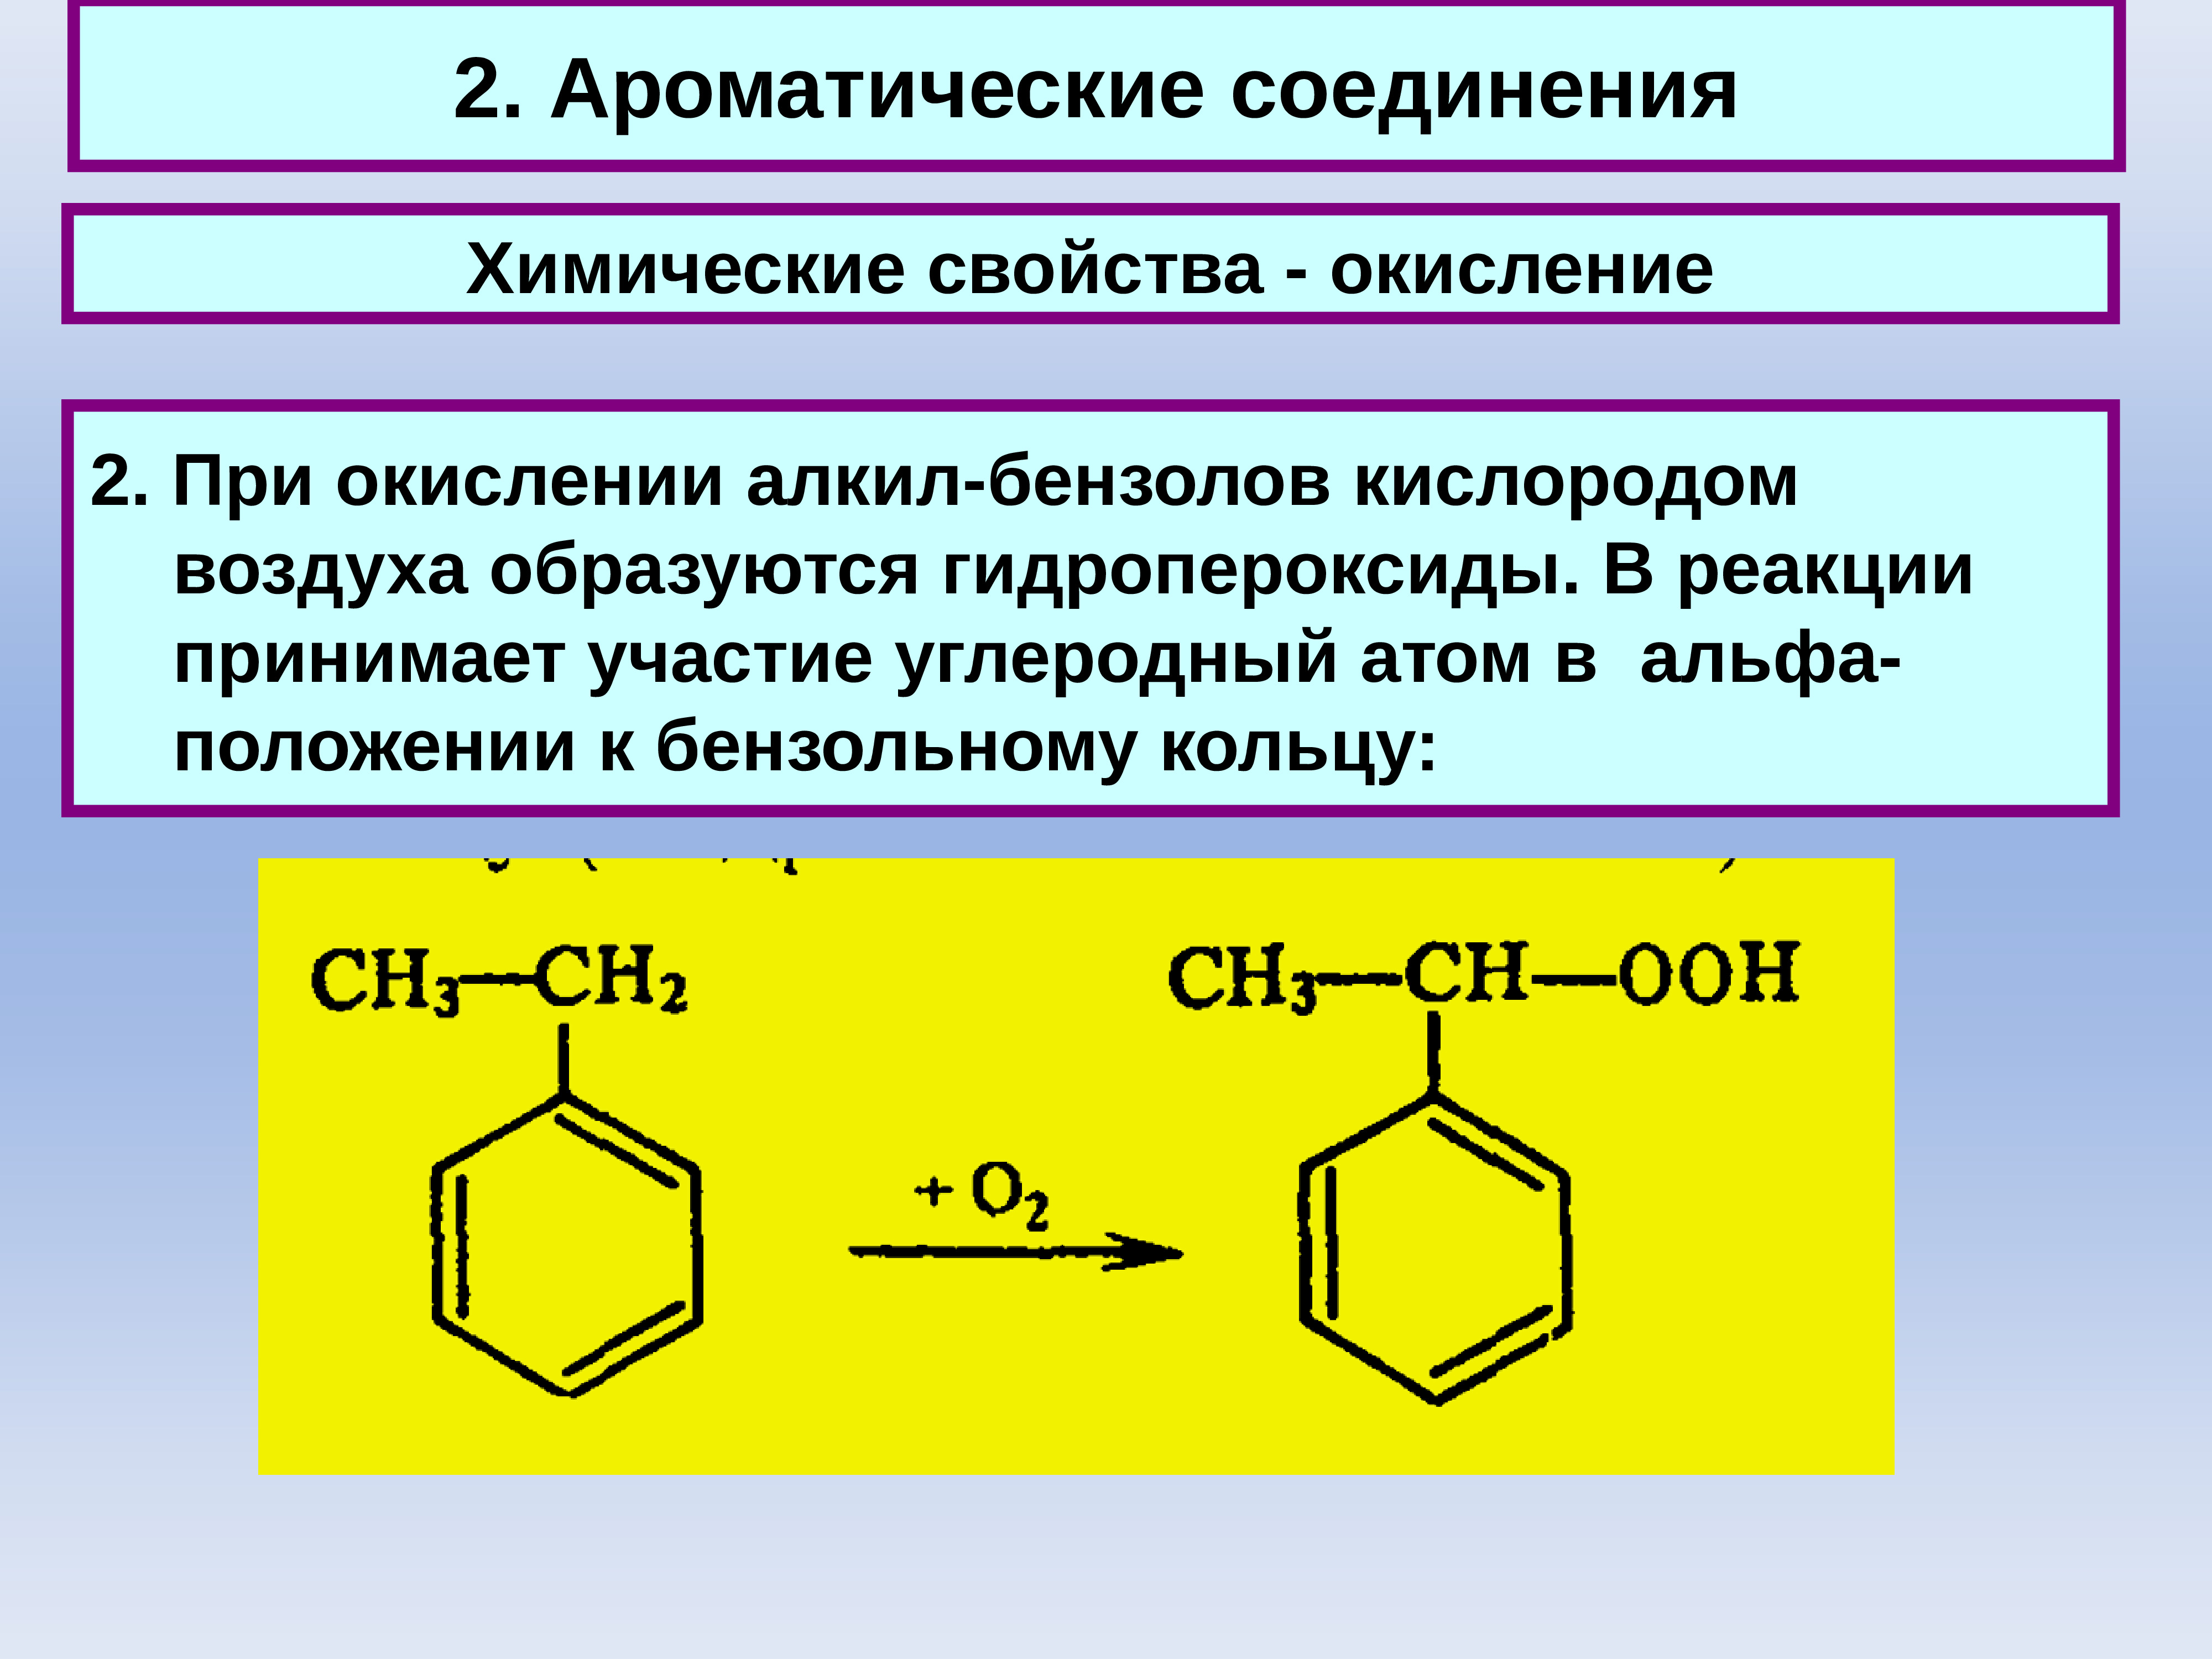 Ароматическое соединение 4. Ароматические соединения с 2 бензольного кольца. Бензольное кольцо ароматические соединения. Химические соединения с 2 бензольных колец. Карбоциклические соединения ароматические бензол.